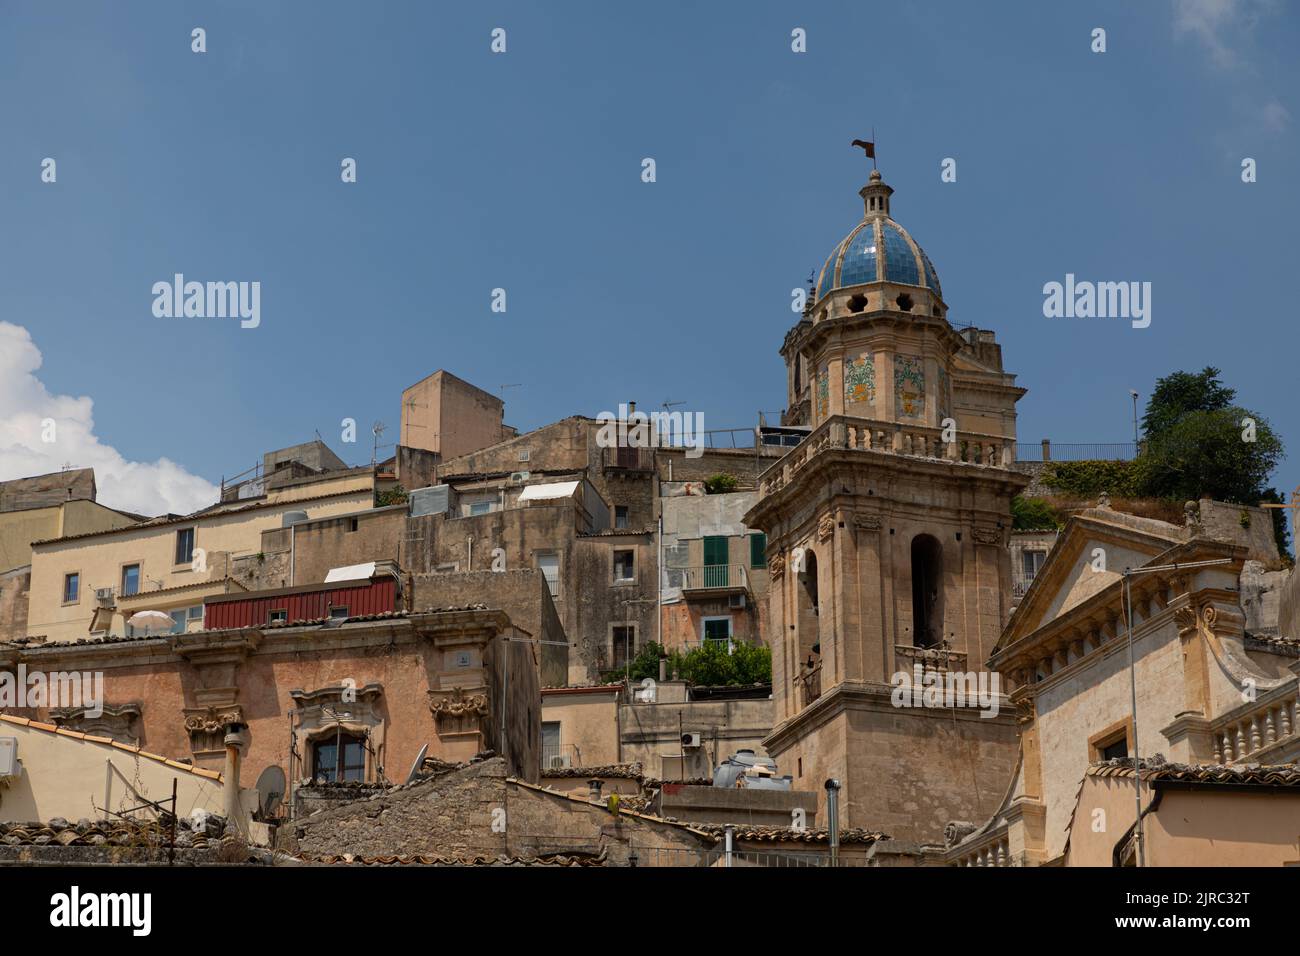 Santa Maria dell'Itria church, Ragusa Ibla, Sicily, Italy Stock Photo